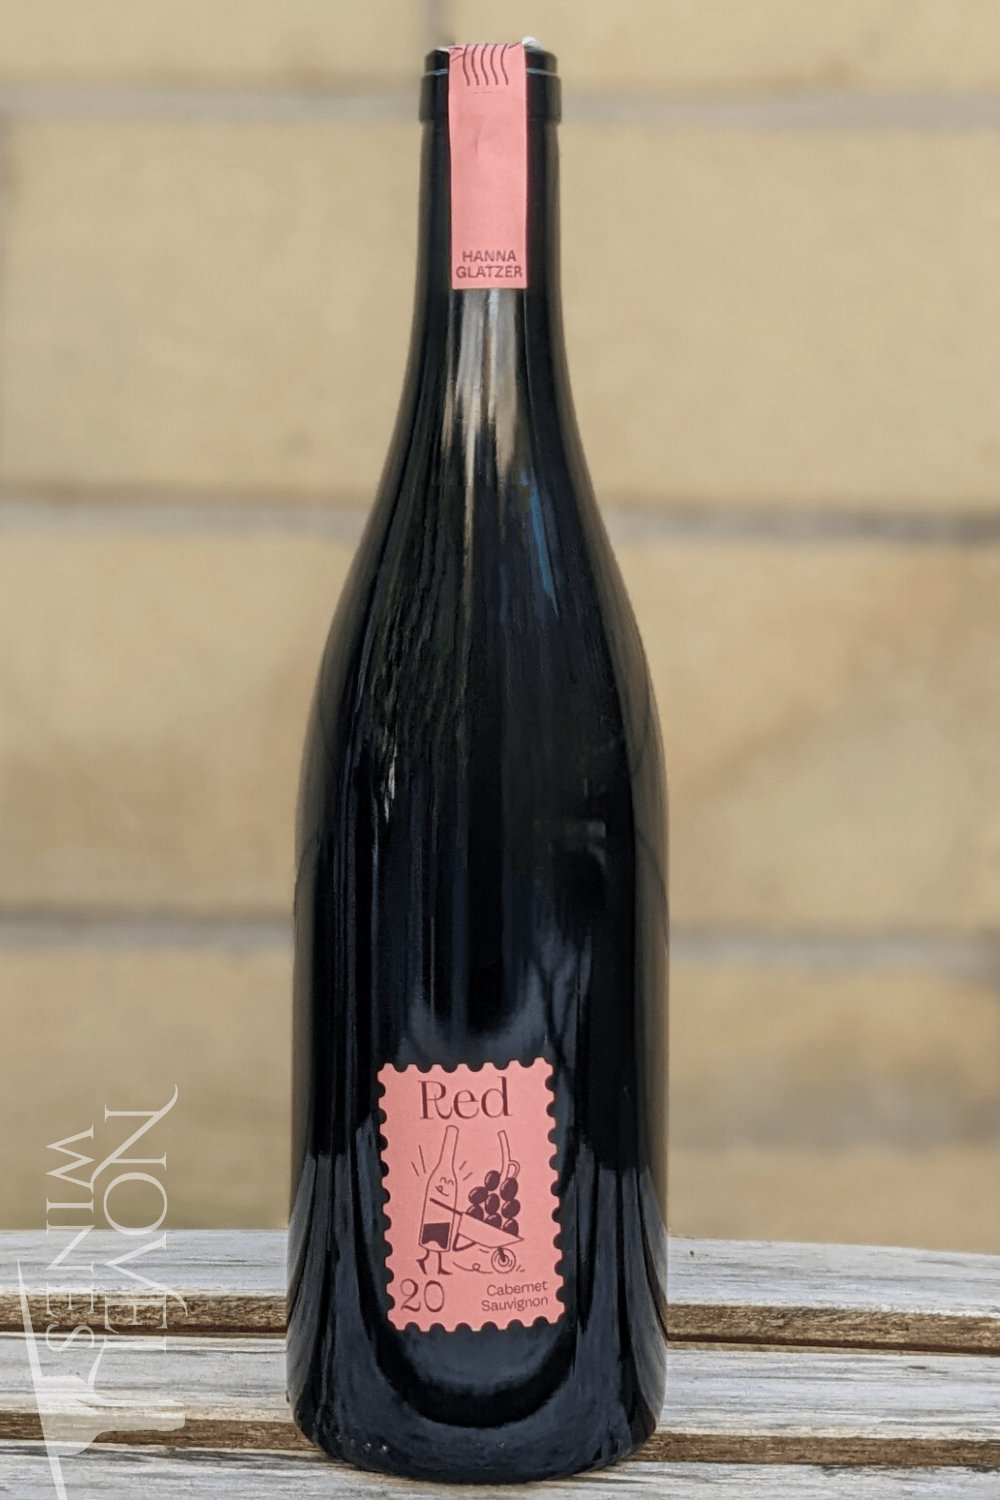 Glatzer Red Wine Hanna Glatzer's Organic Cabernet Sauvignon 2020, Austria